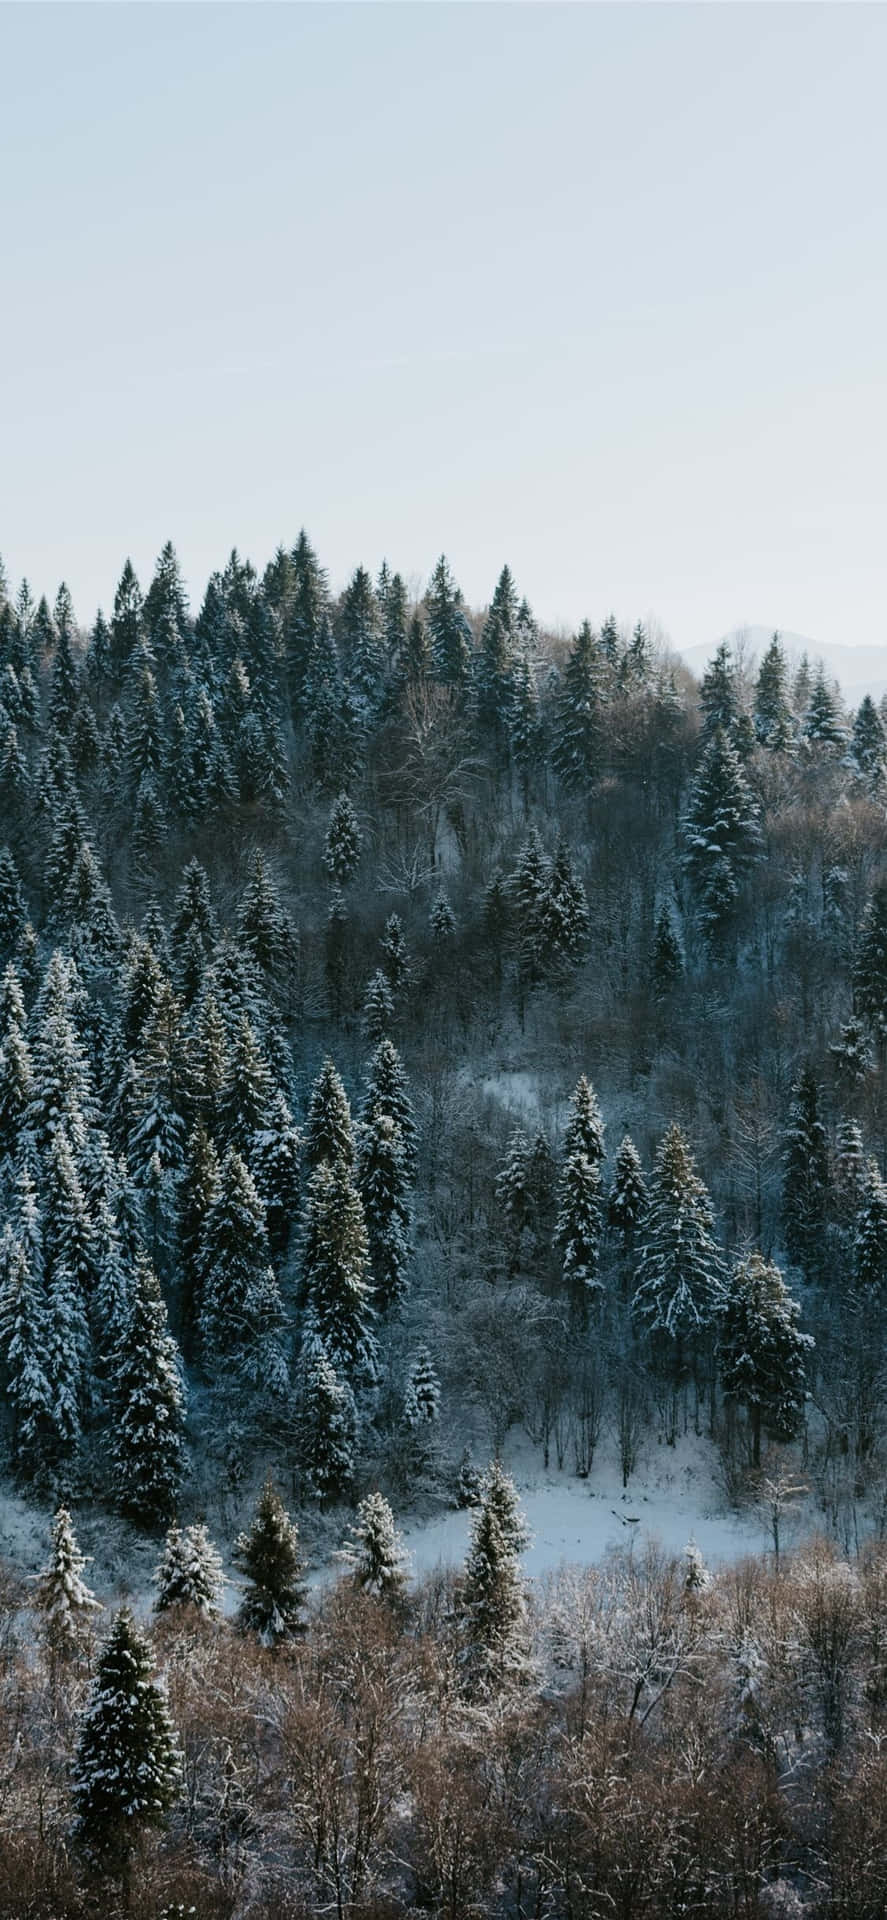 A Serene Winter Wonderland